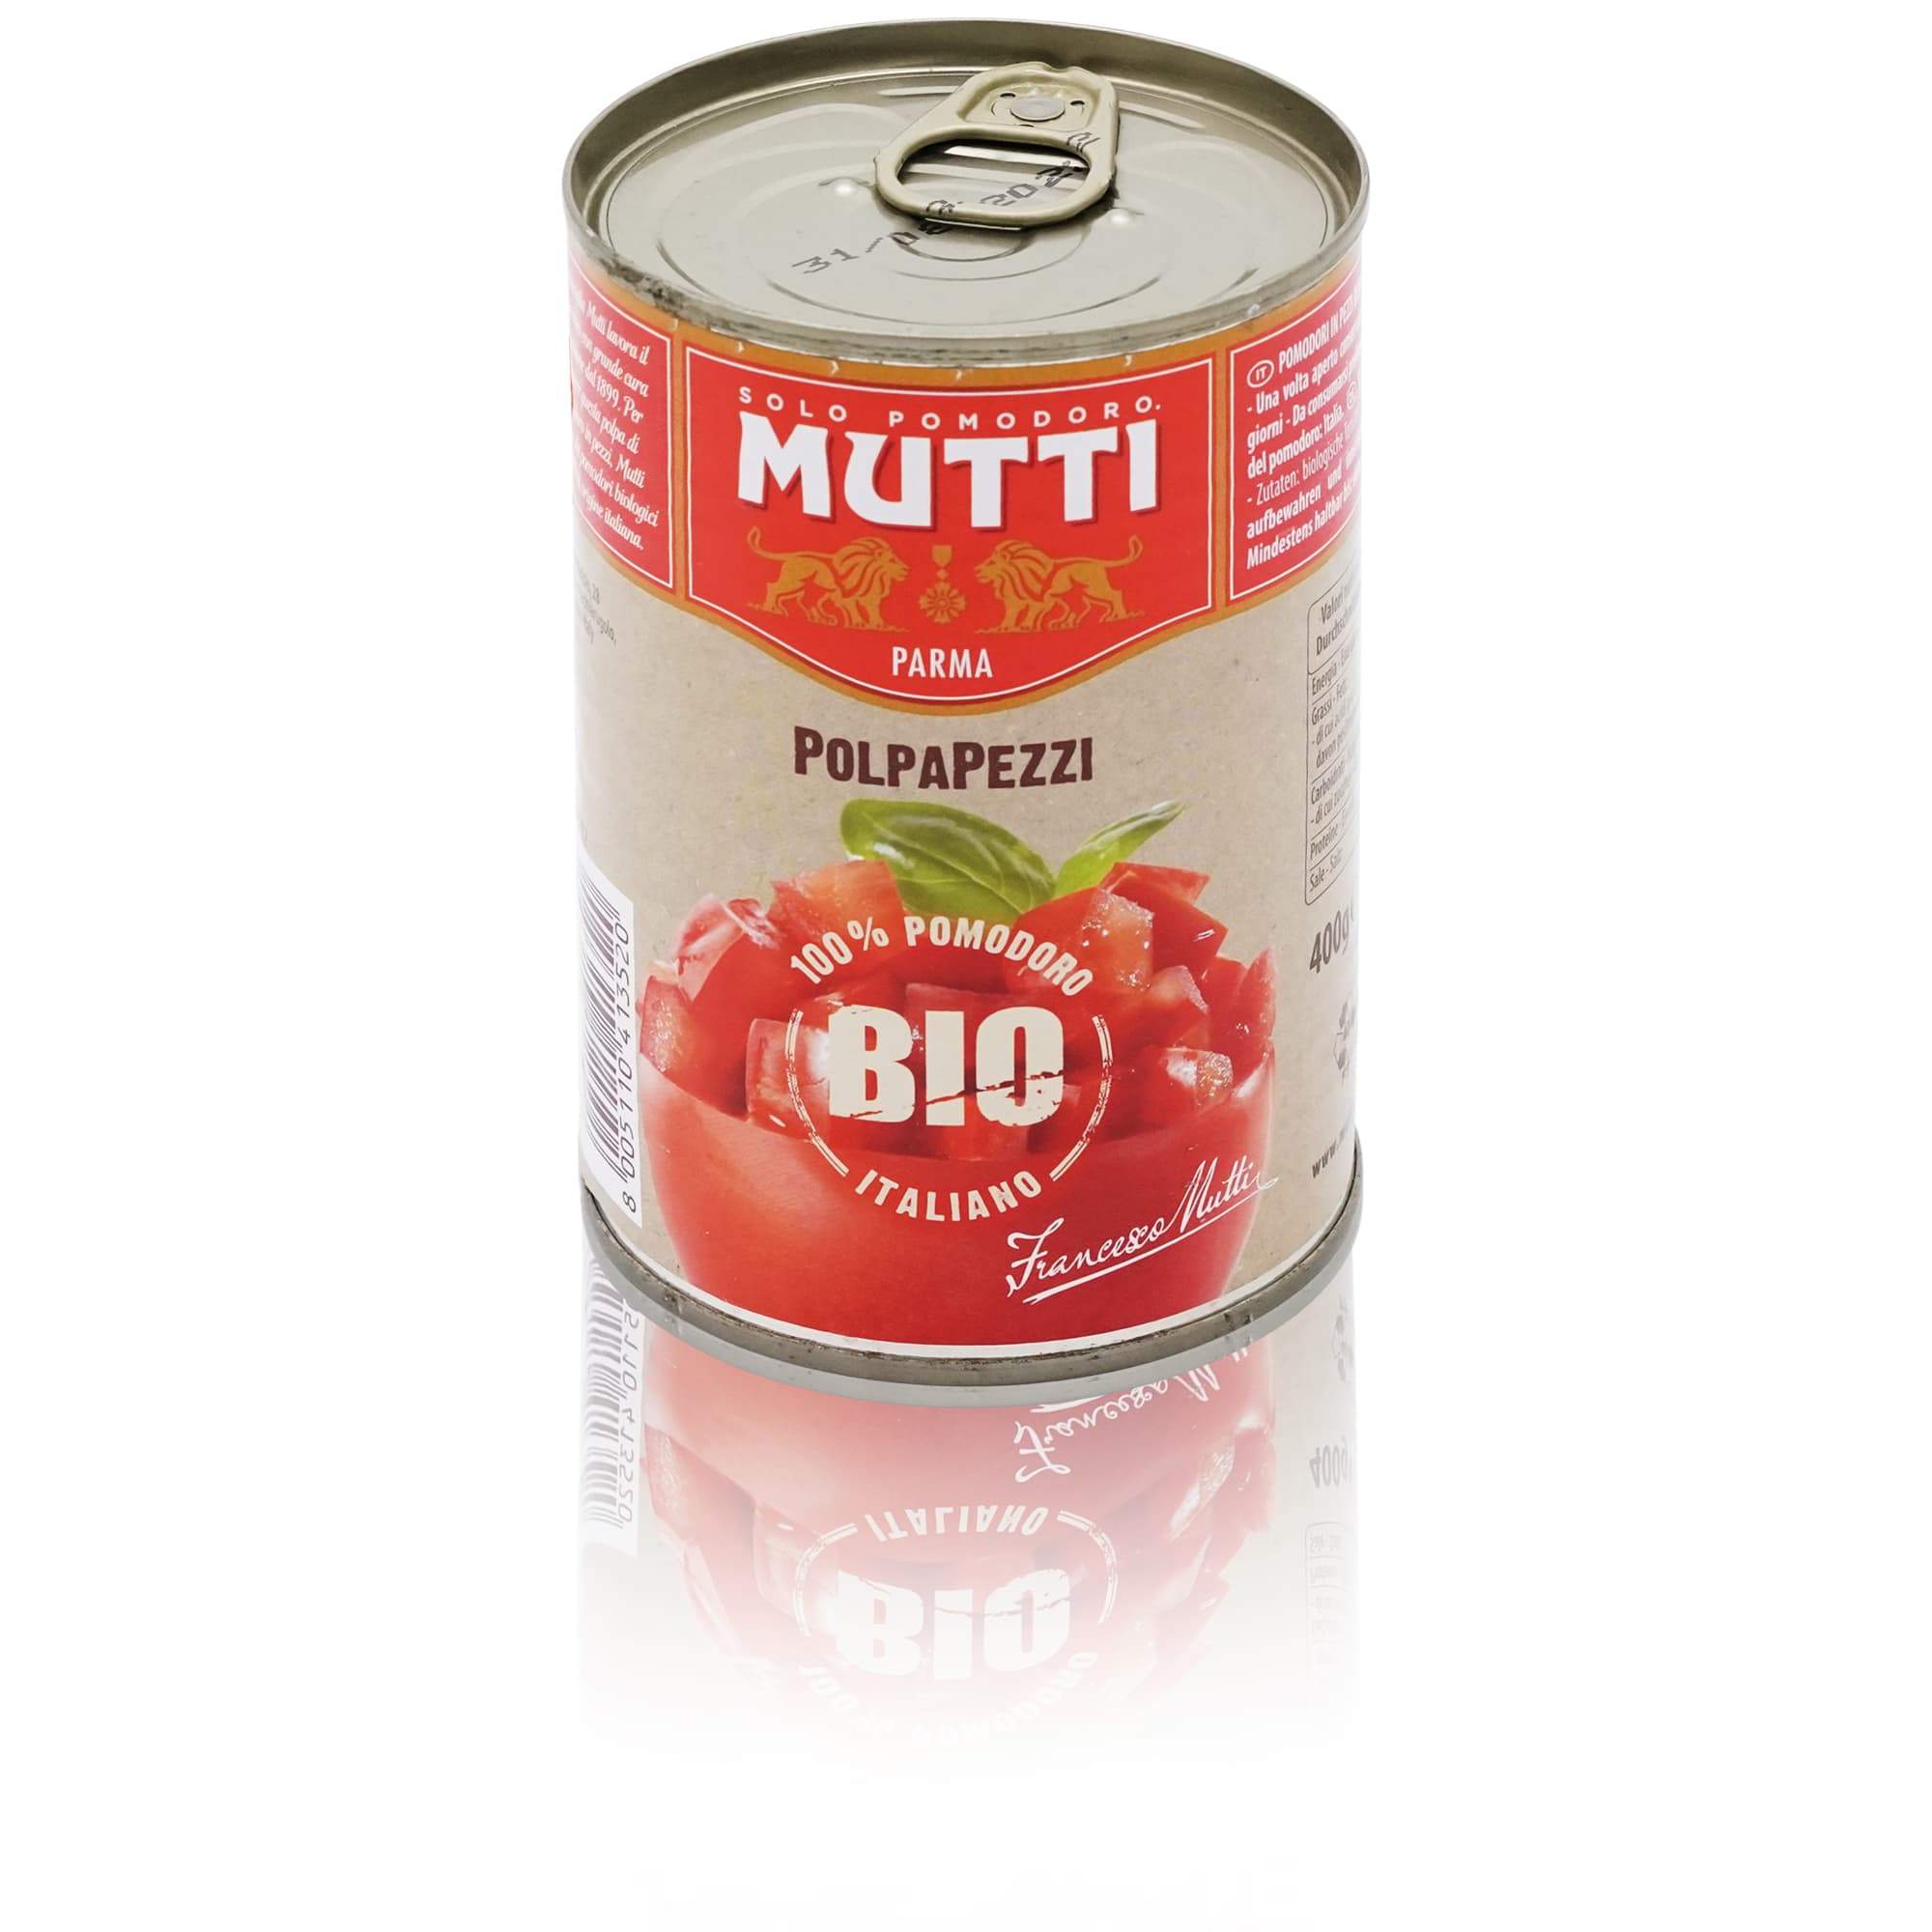 MUTTI Polpa pezzi Bio – Tomatenfruchtfleisch in Würfel BIO - 0,400kg